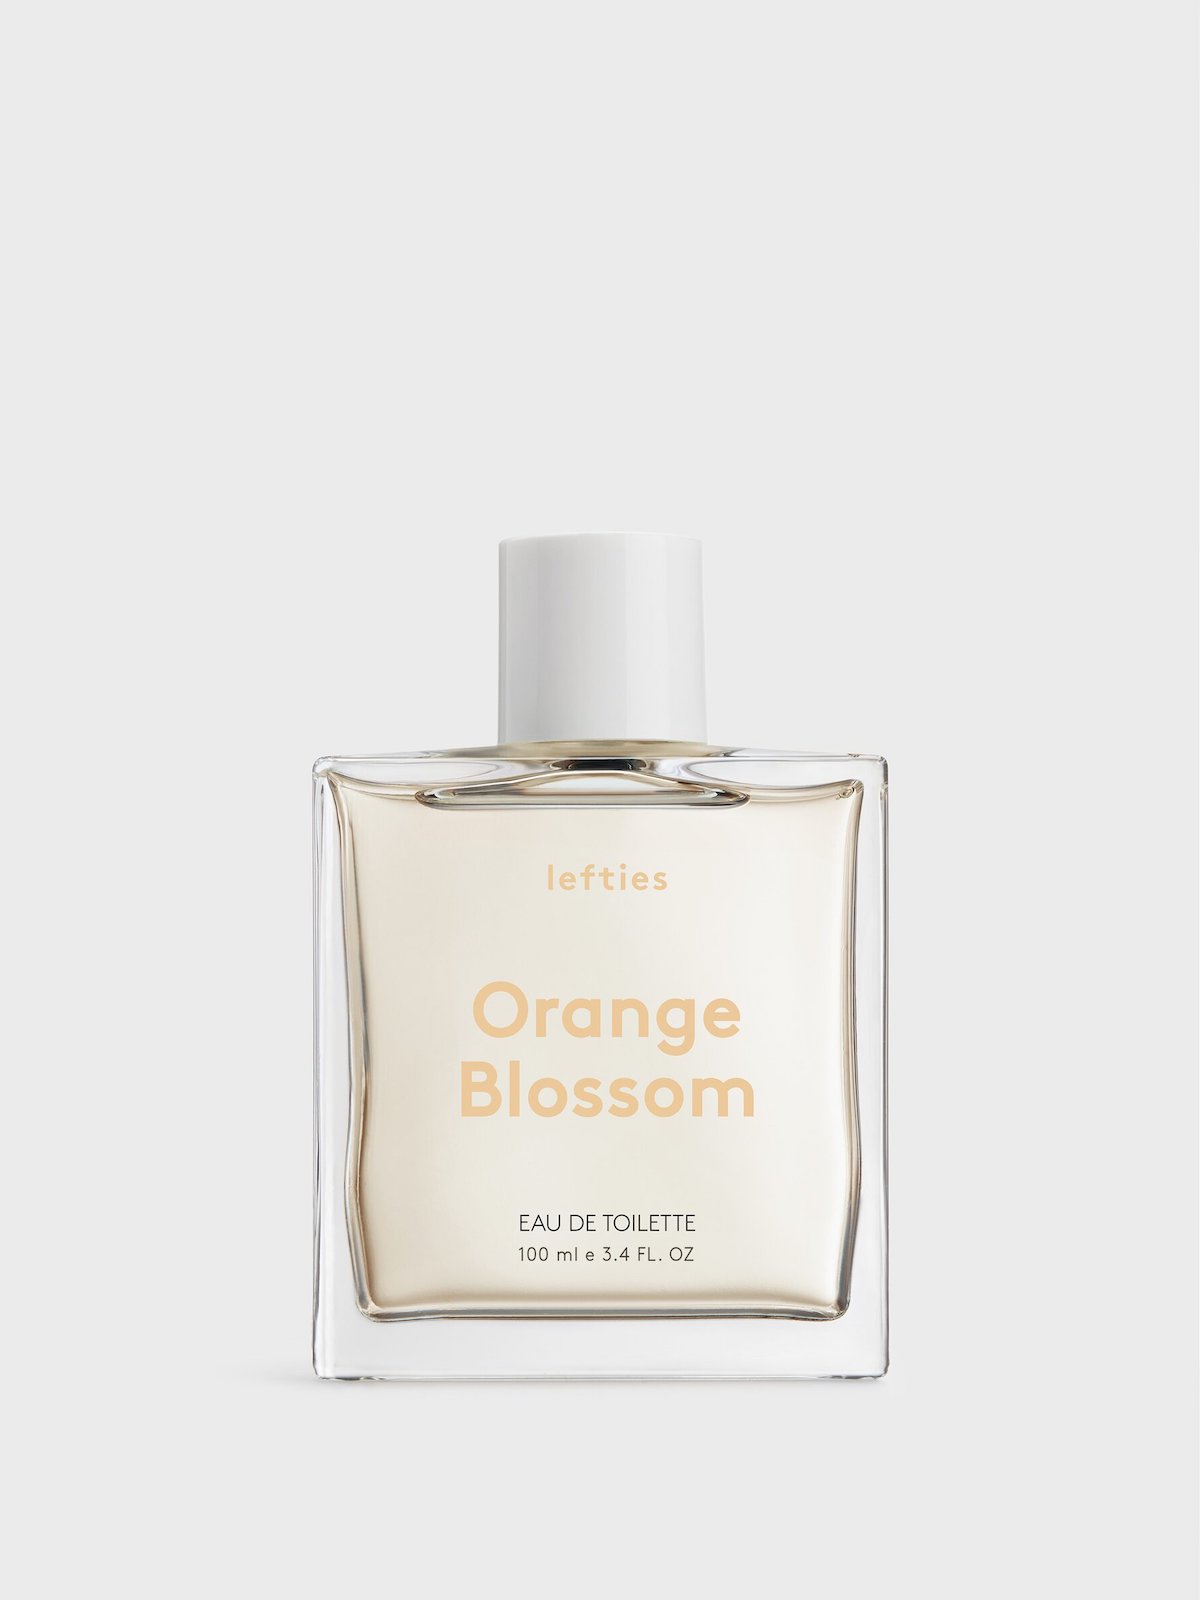 Les notes de tête du parfum Néroli sont les notes de fond de fleur d'oranger, de jasmin et de musc.